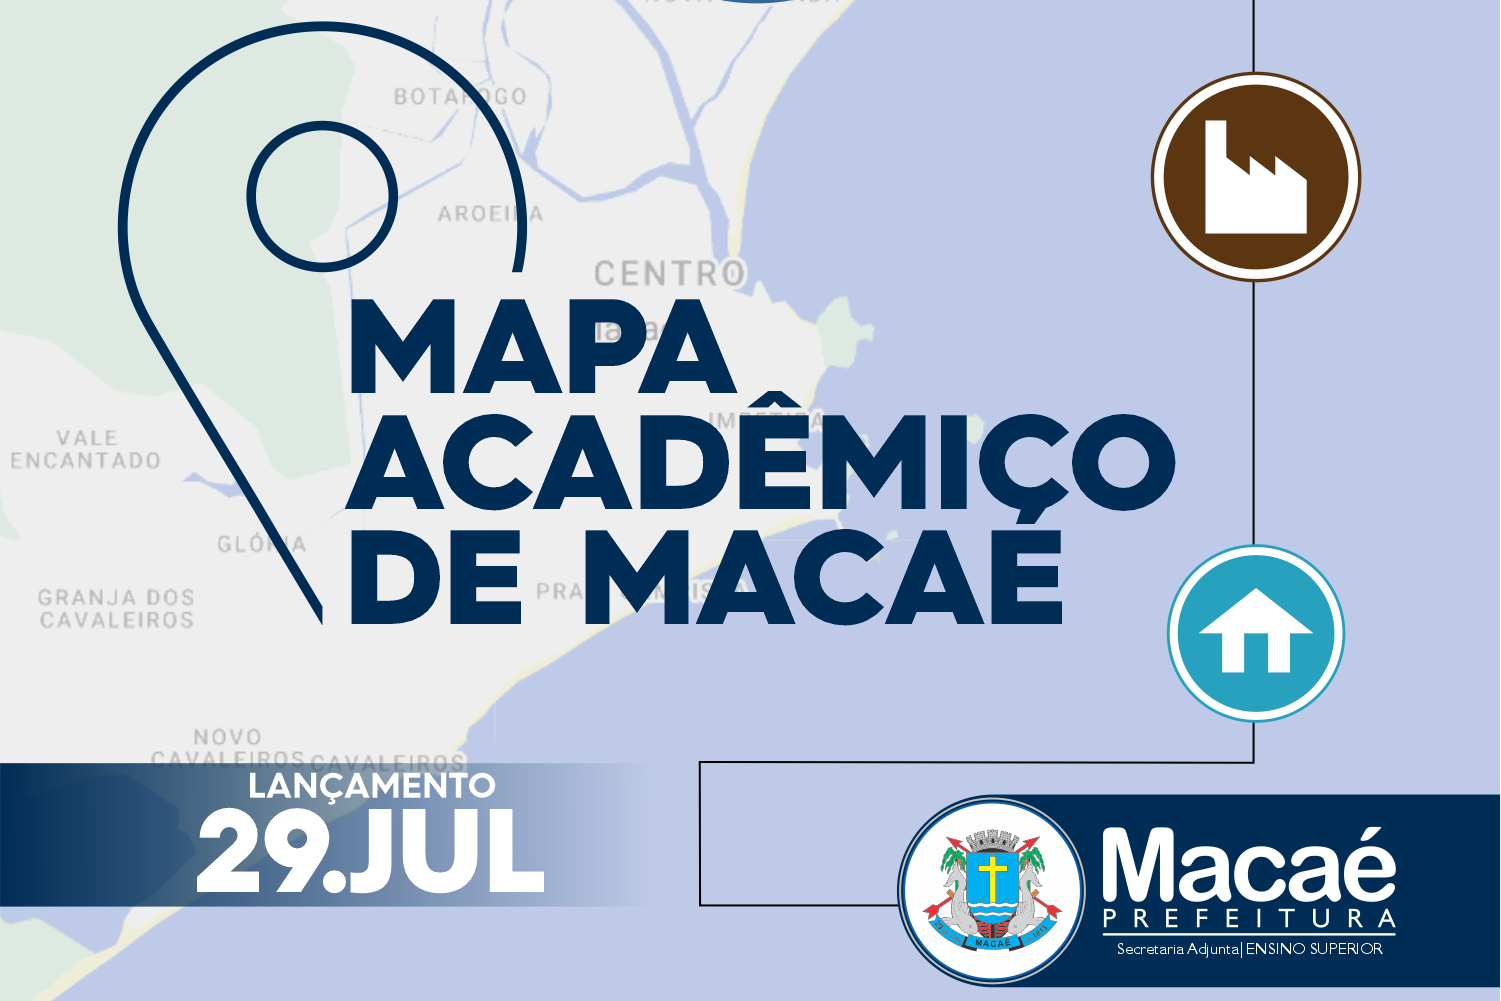 Macaé oferece 33 cursos de graduação e 14 de pós-graduação, mestrado e/ou doutorado através de 6 universidades públicas